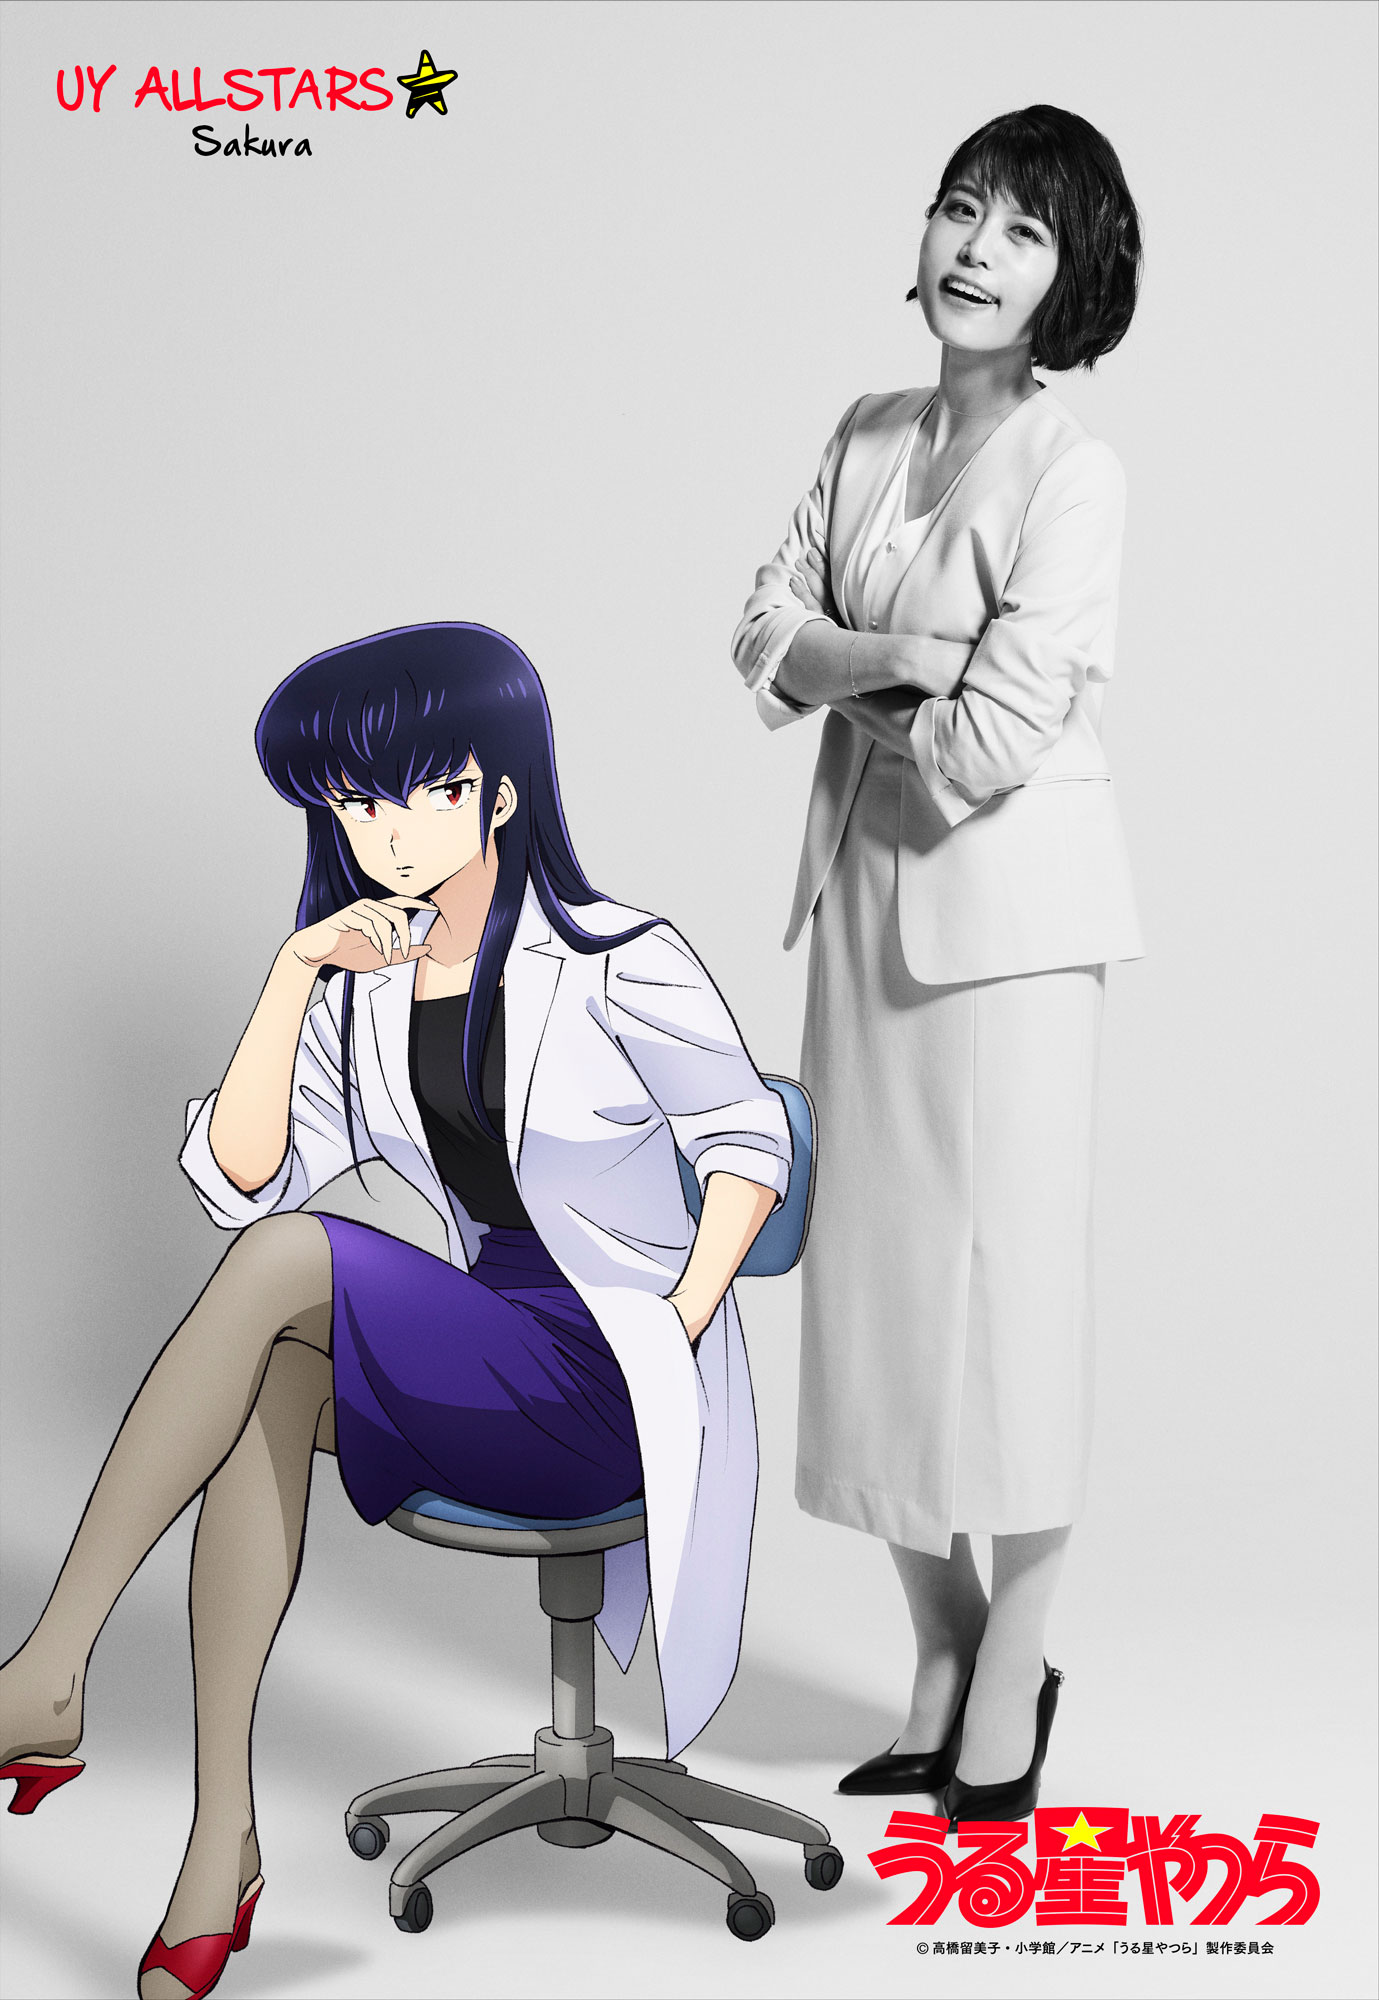 Urusei Yatsura 06 (2022)(New Girls! #UruseiYatsura) - AstroNerdBoy's Anime  & Manga Blog | AstroNerdBoy's Anime & Manga Blog